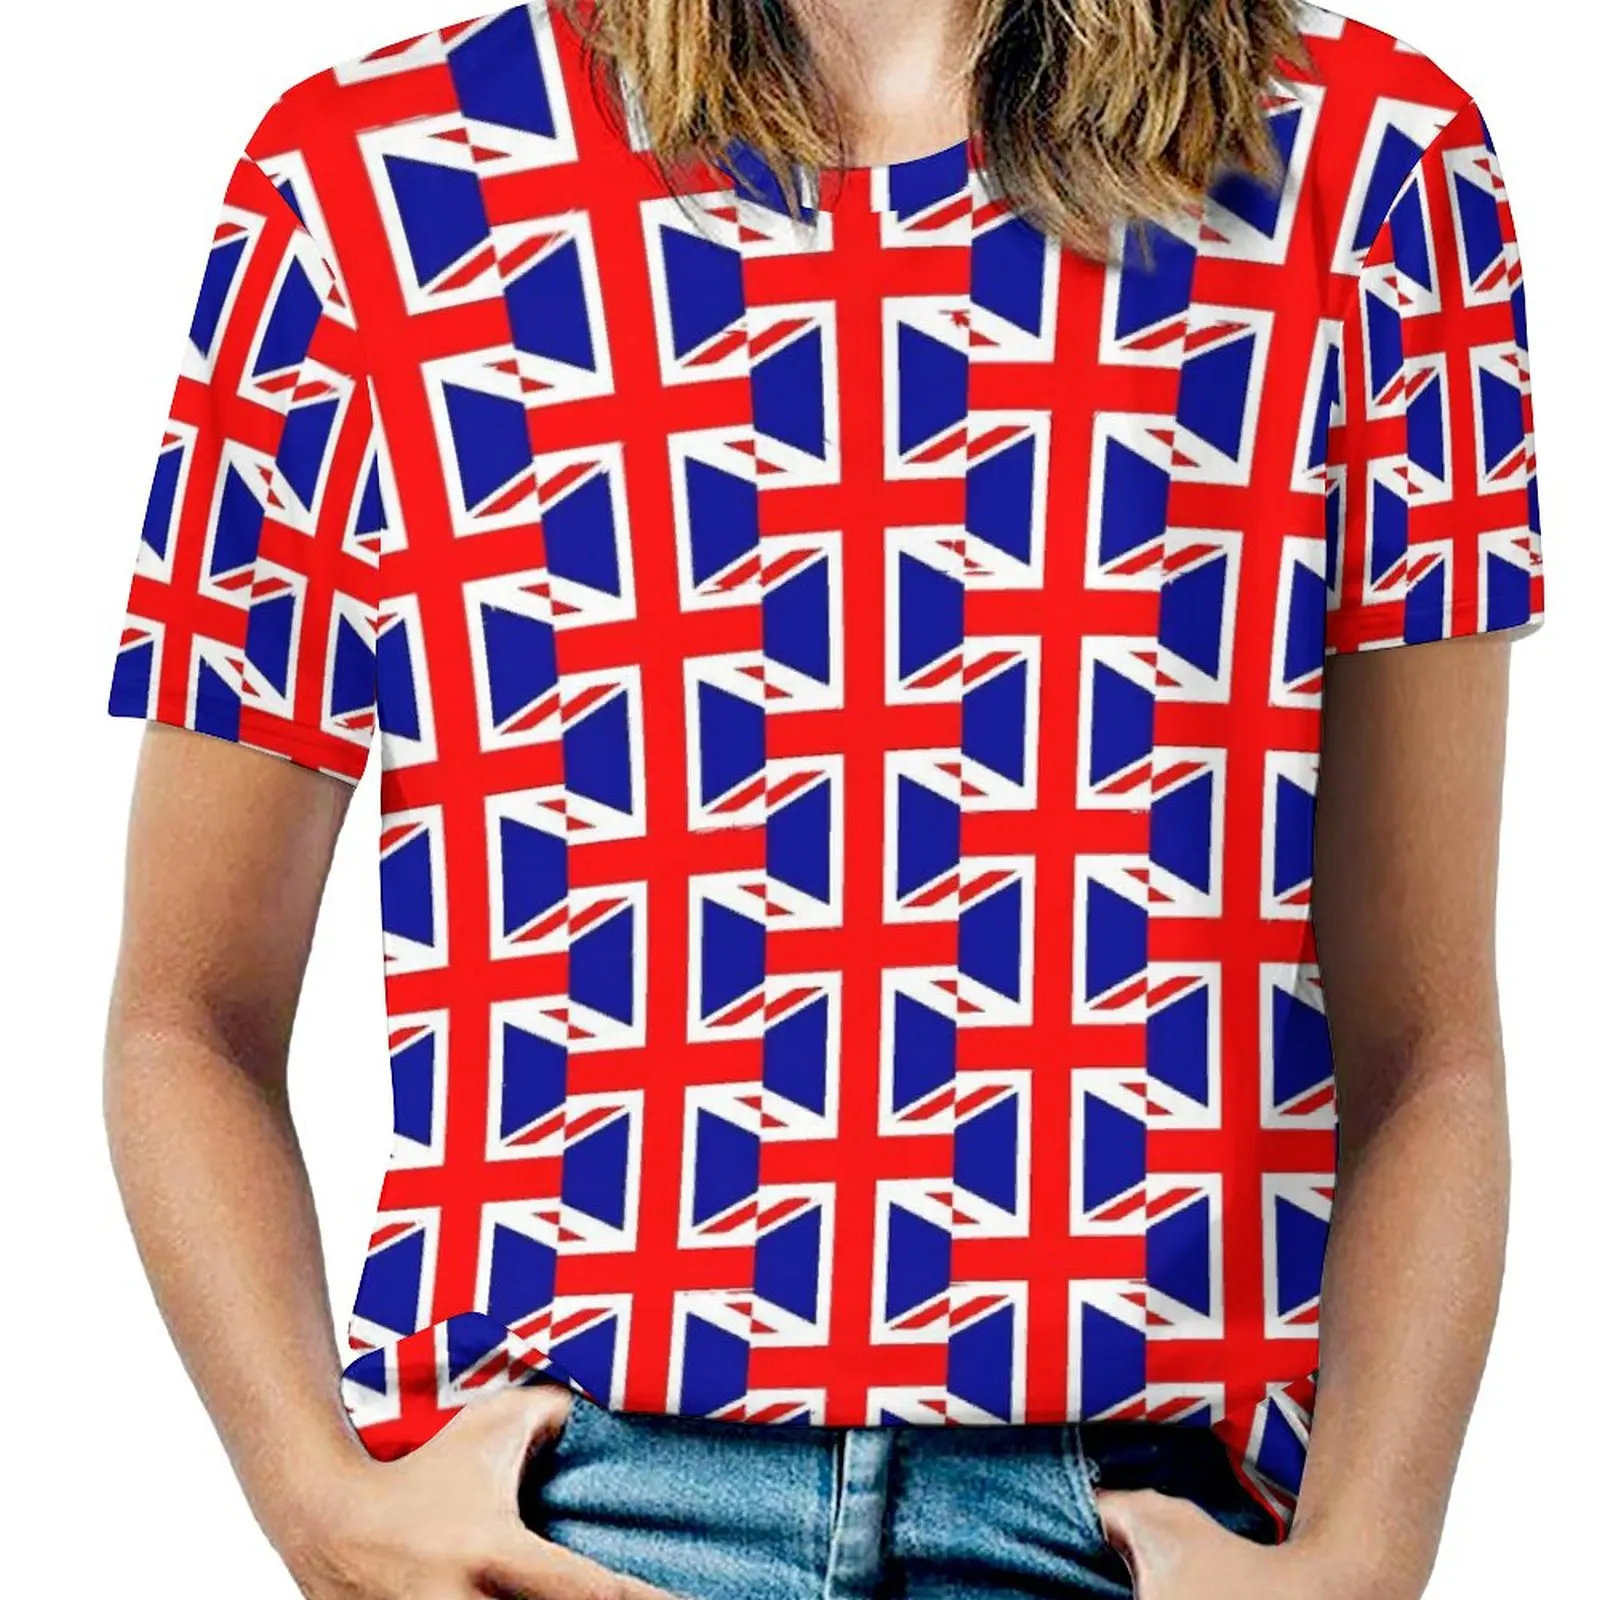 

Футболка с британским флагом, милые футболки с принтом флагов Великобритании, Повседневная футболка с коротким рукавом, летние футболки на заказ, большие размеры 5XL 6XL